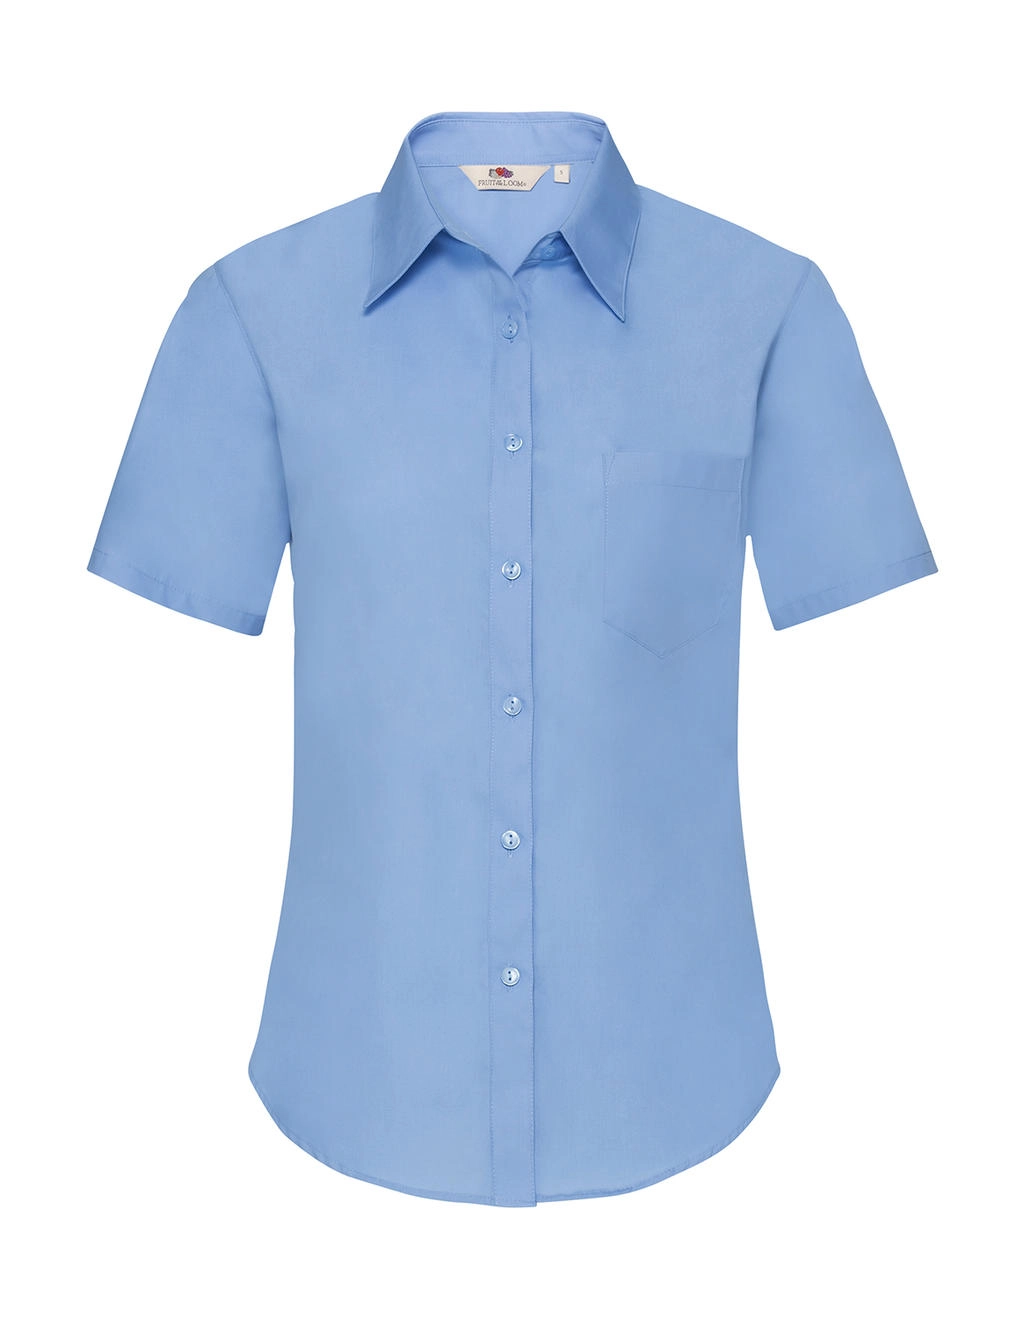 Ladies` Poplin Shirt zum Besticken und Bedrucken in der Farbe Mid Blue mit Ihren Logo, Schriftzug oder Motiv.